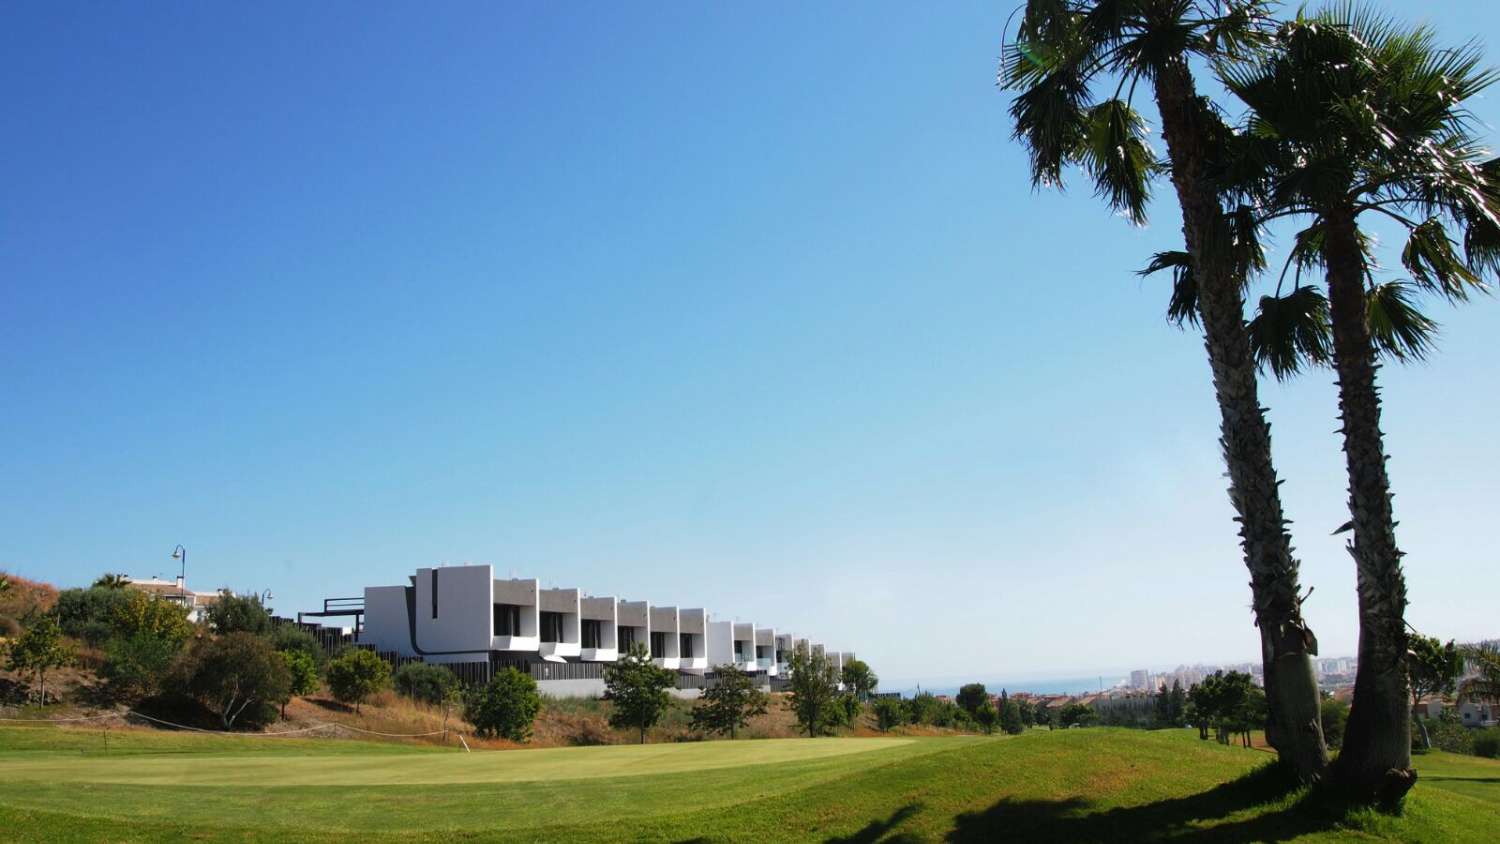 Maison jumelée avec piscine privée à vendre au pied du terrain de golf, Caleta de Vélez, Costa del sol, Málaga